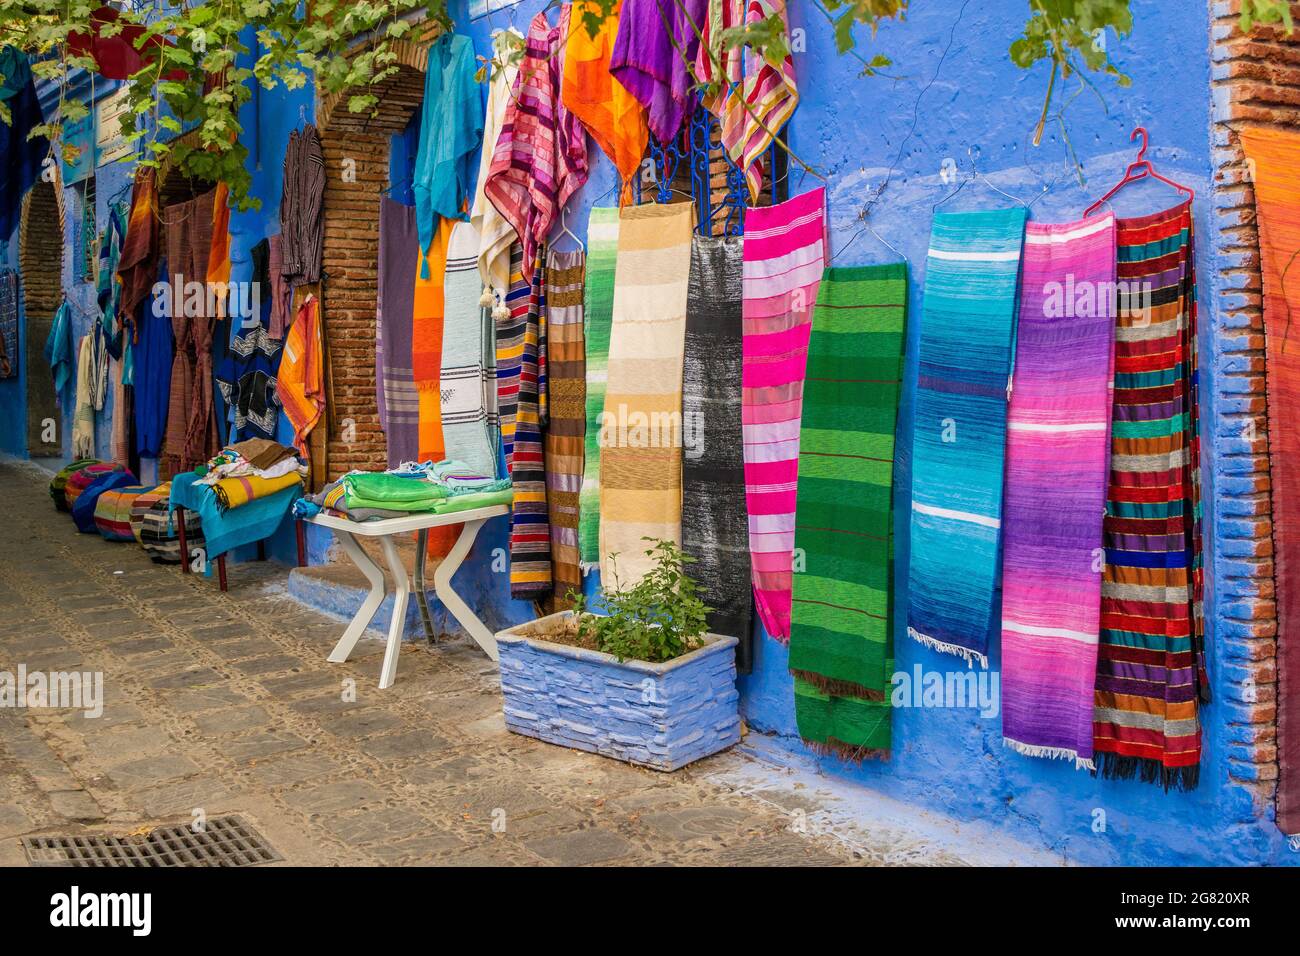 CHEFCHAOUEN, MAROC - 31 août 2018 : un gros plan de tissus et de foulards colorés dans une rue étroite de la ville de Chefchaouen, Maroc Banque D'Images